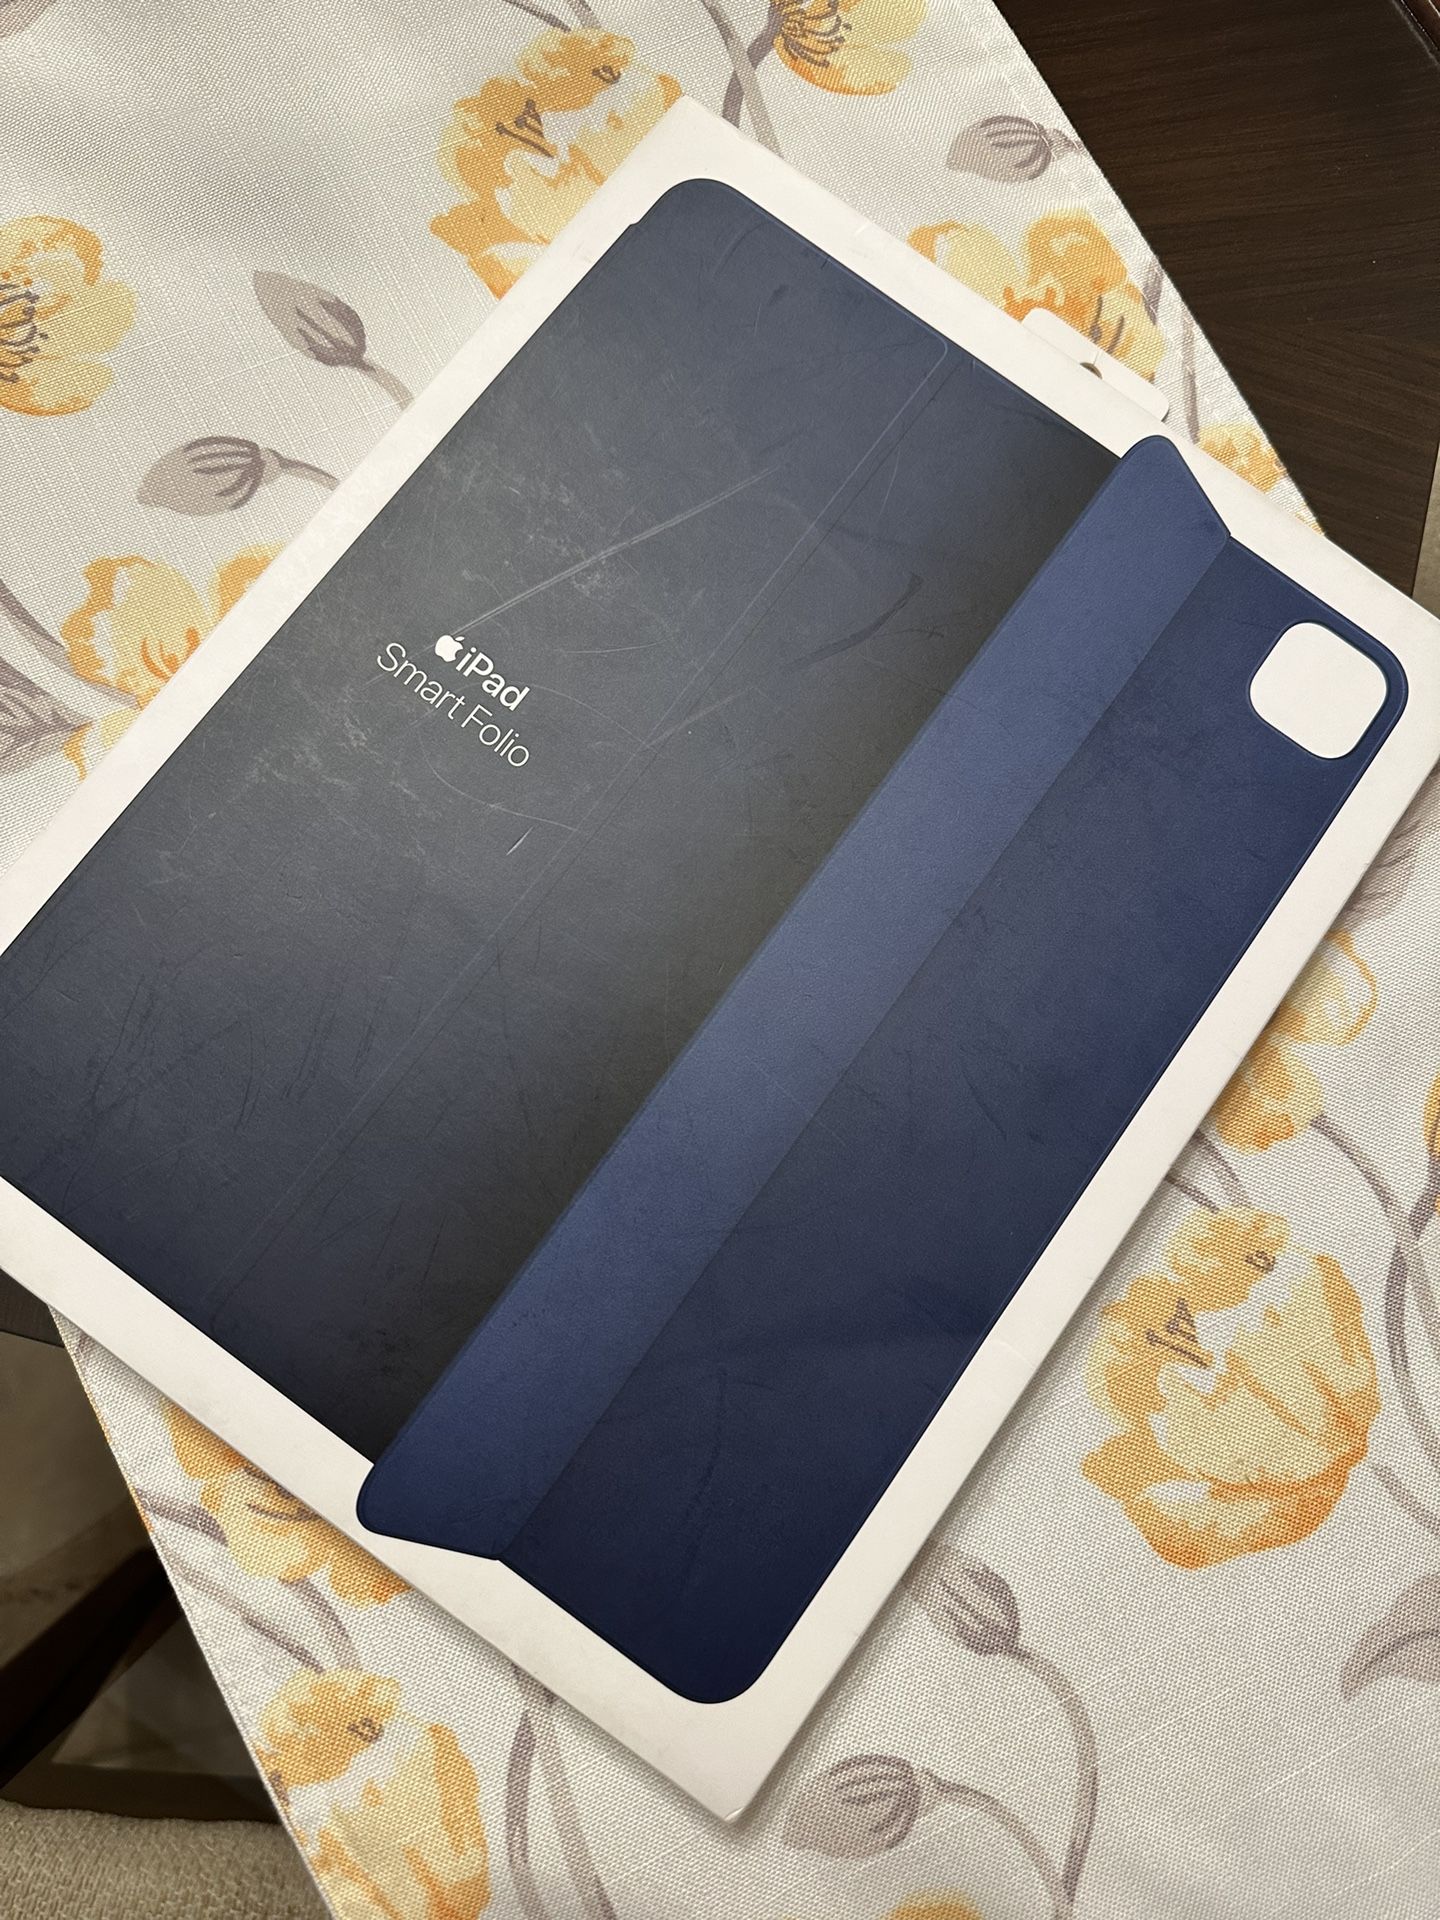 iPad Pro 12.9 In Smartfolio Case 